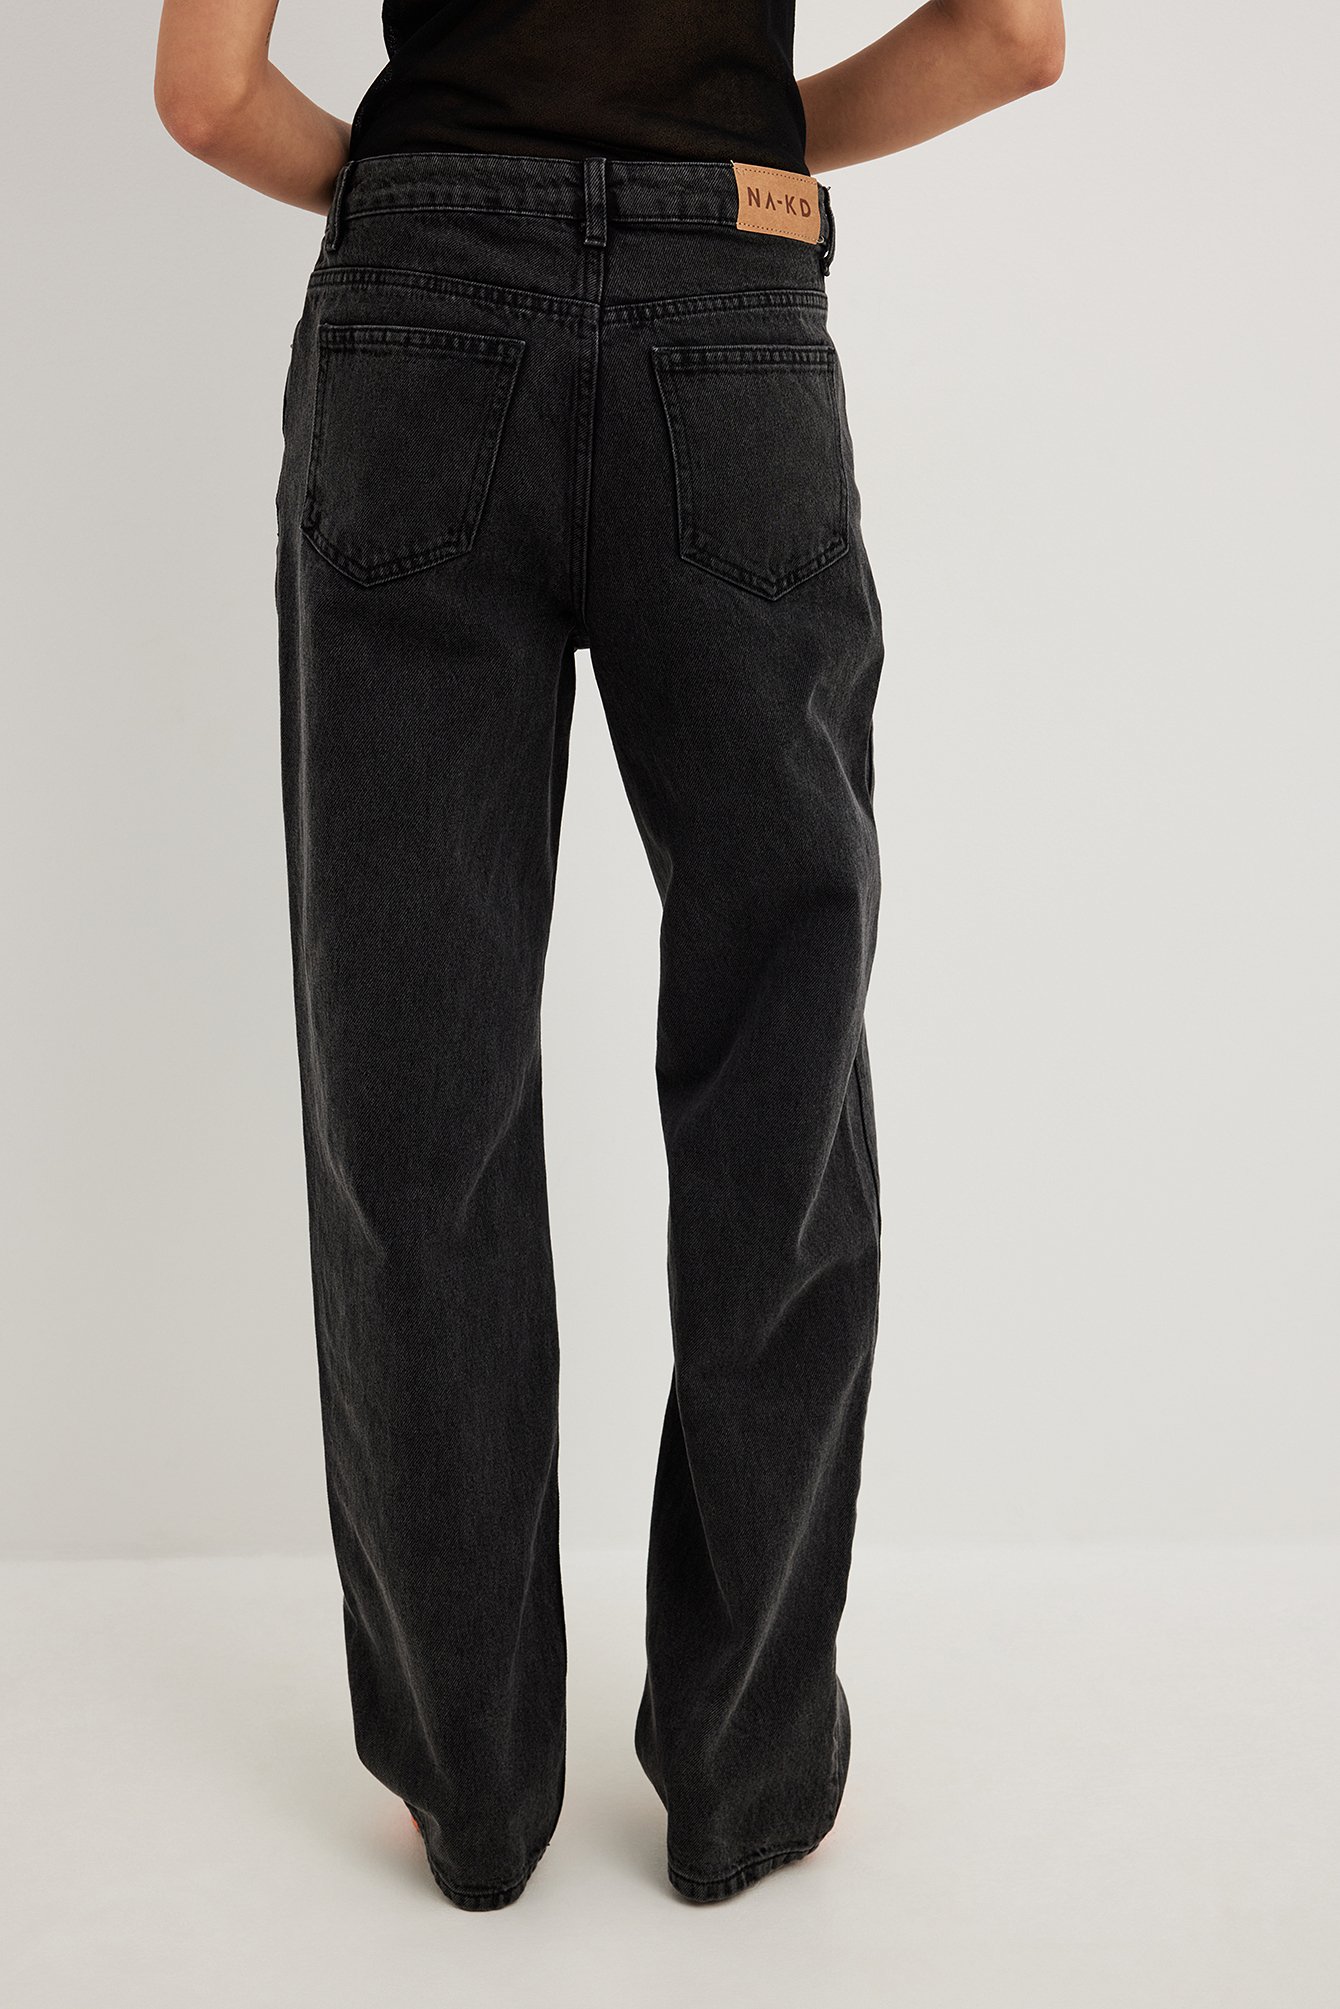 Grey Lockere Jeans mit mittlerer Taille